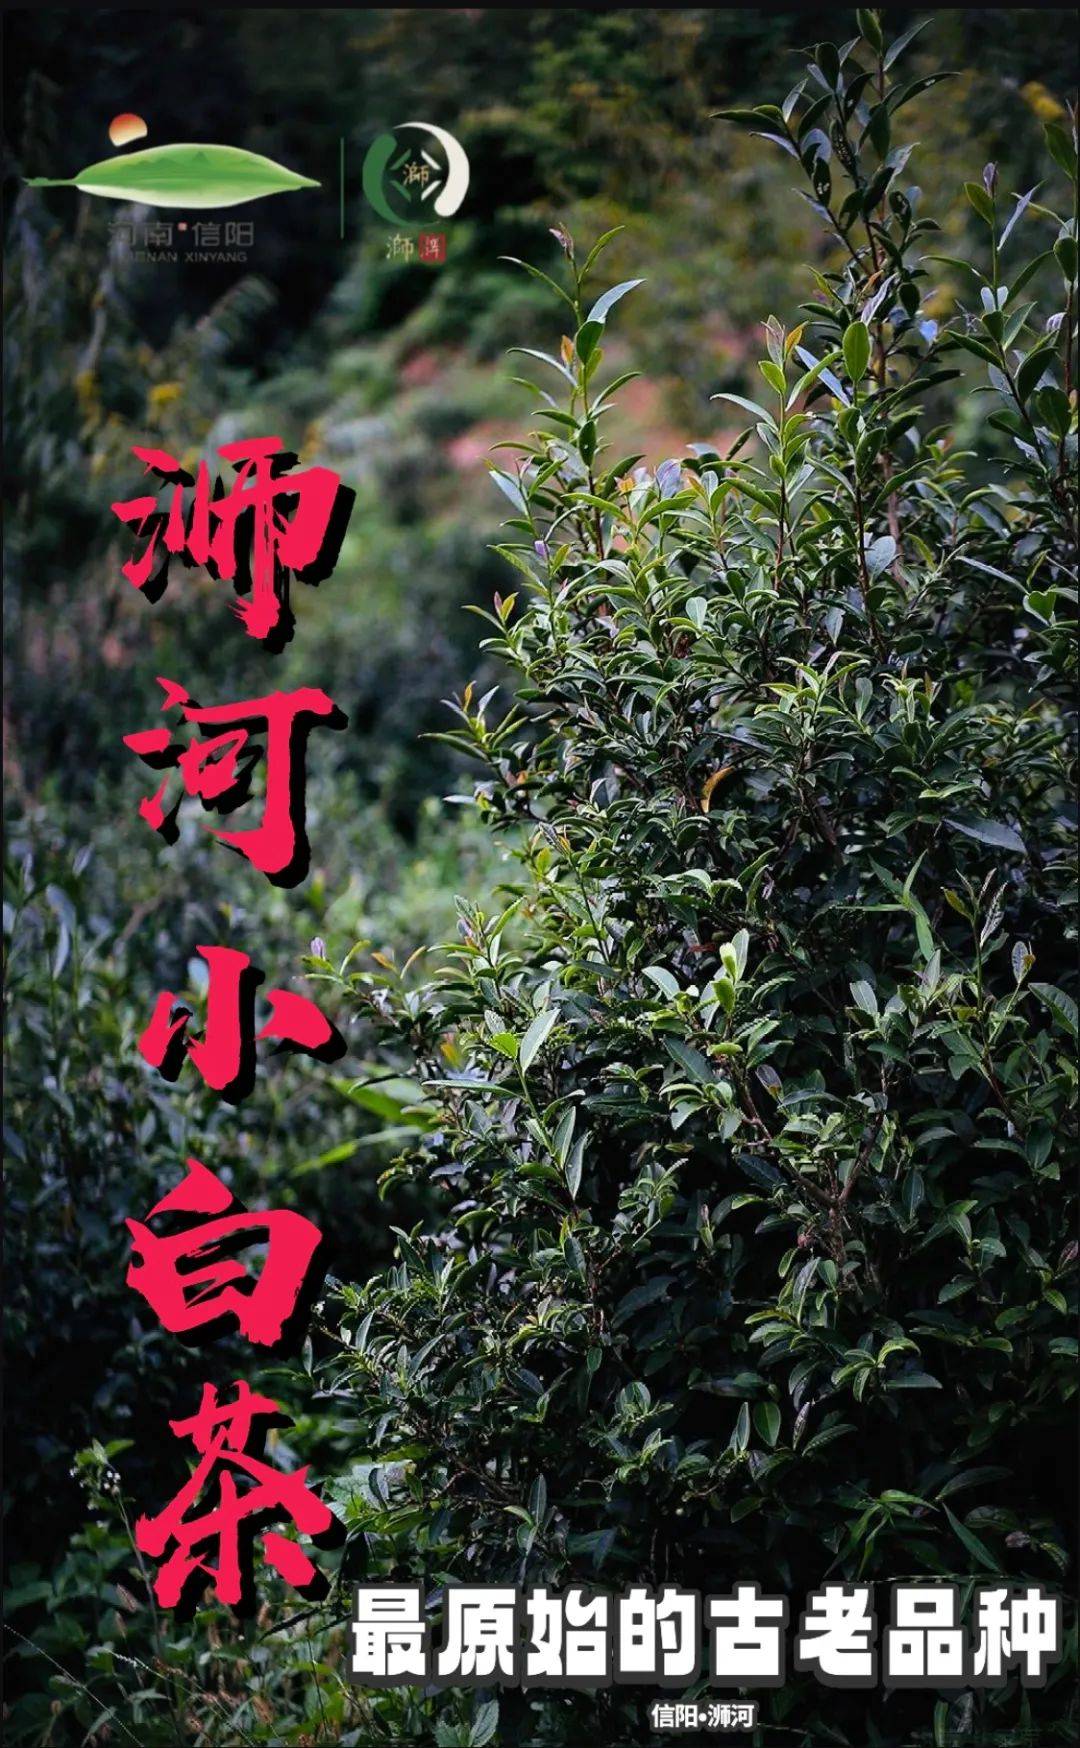 【浉河小白茶】信阳·浉河群体种老茶树鲜叶 500g散装批发收藏